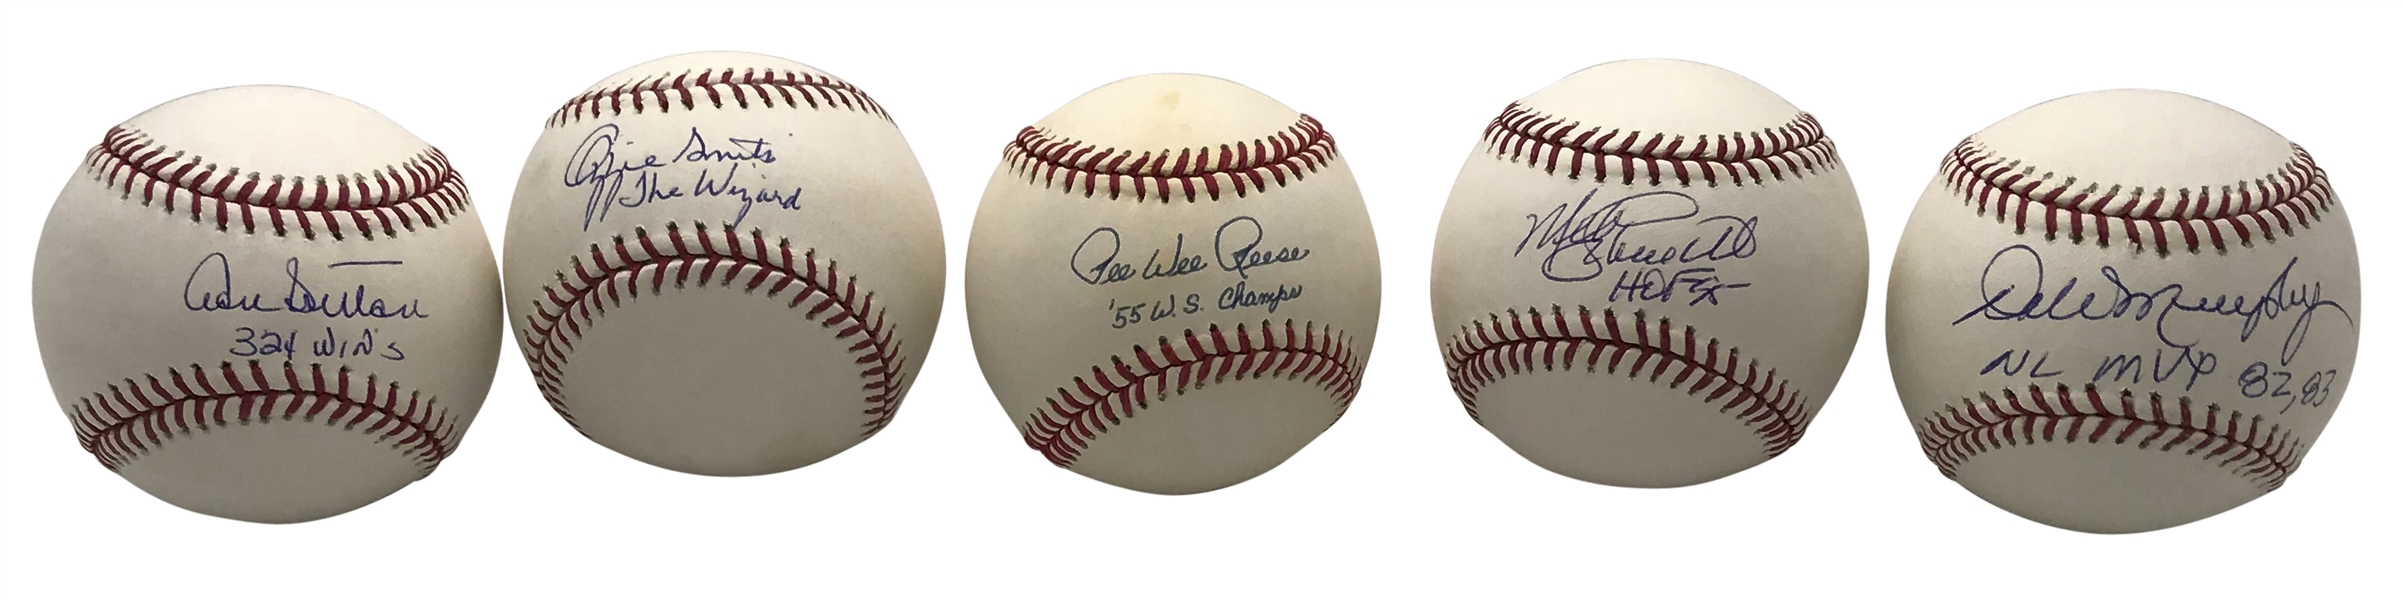 Lot of Nine (9) MLB Legends Single Signed & Inscribed Official Baseballs (PSA/DNA, JSA & MLB)